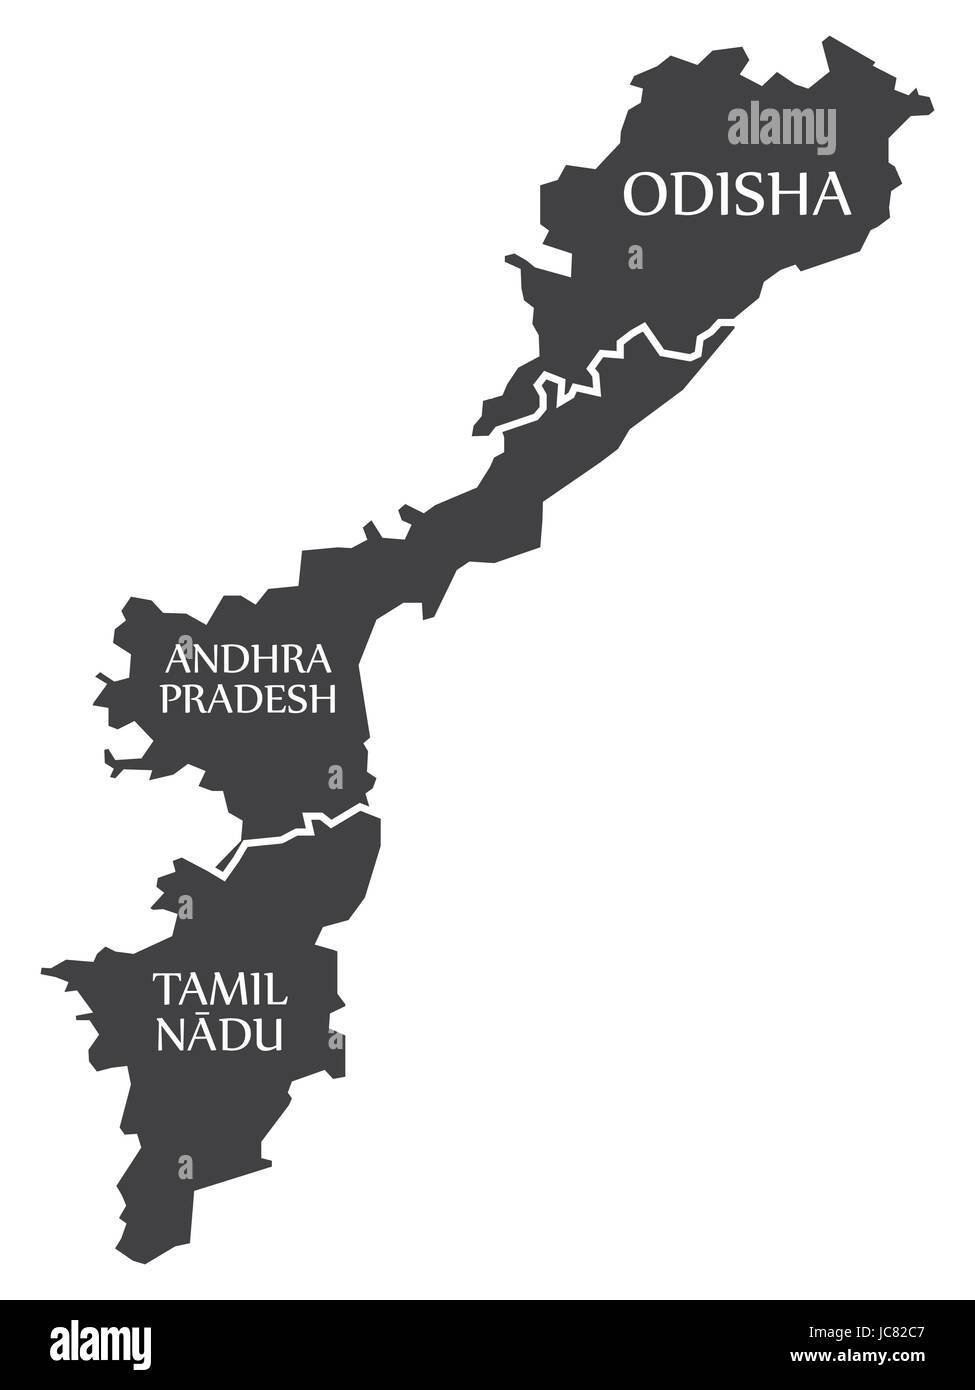 Odisha - Andhra Pradesh - Tamil Nadu Site Illustration d'états indiens Illustration de Vecteur